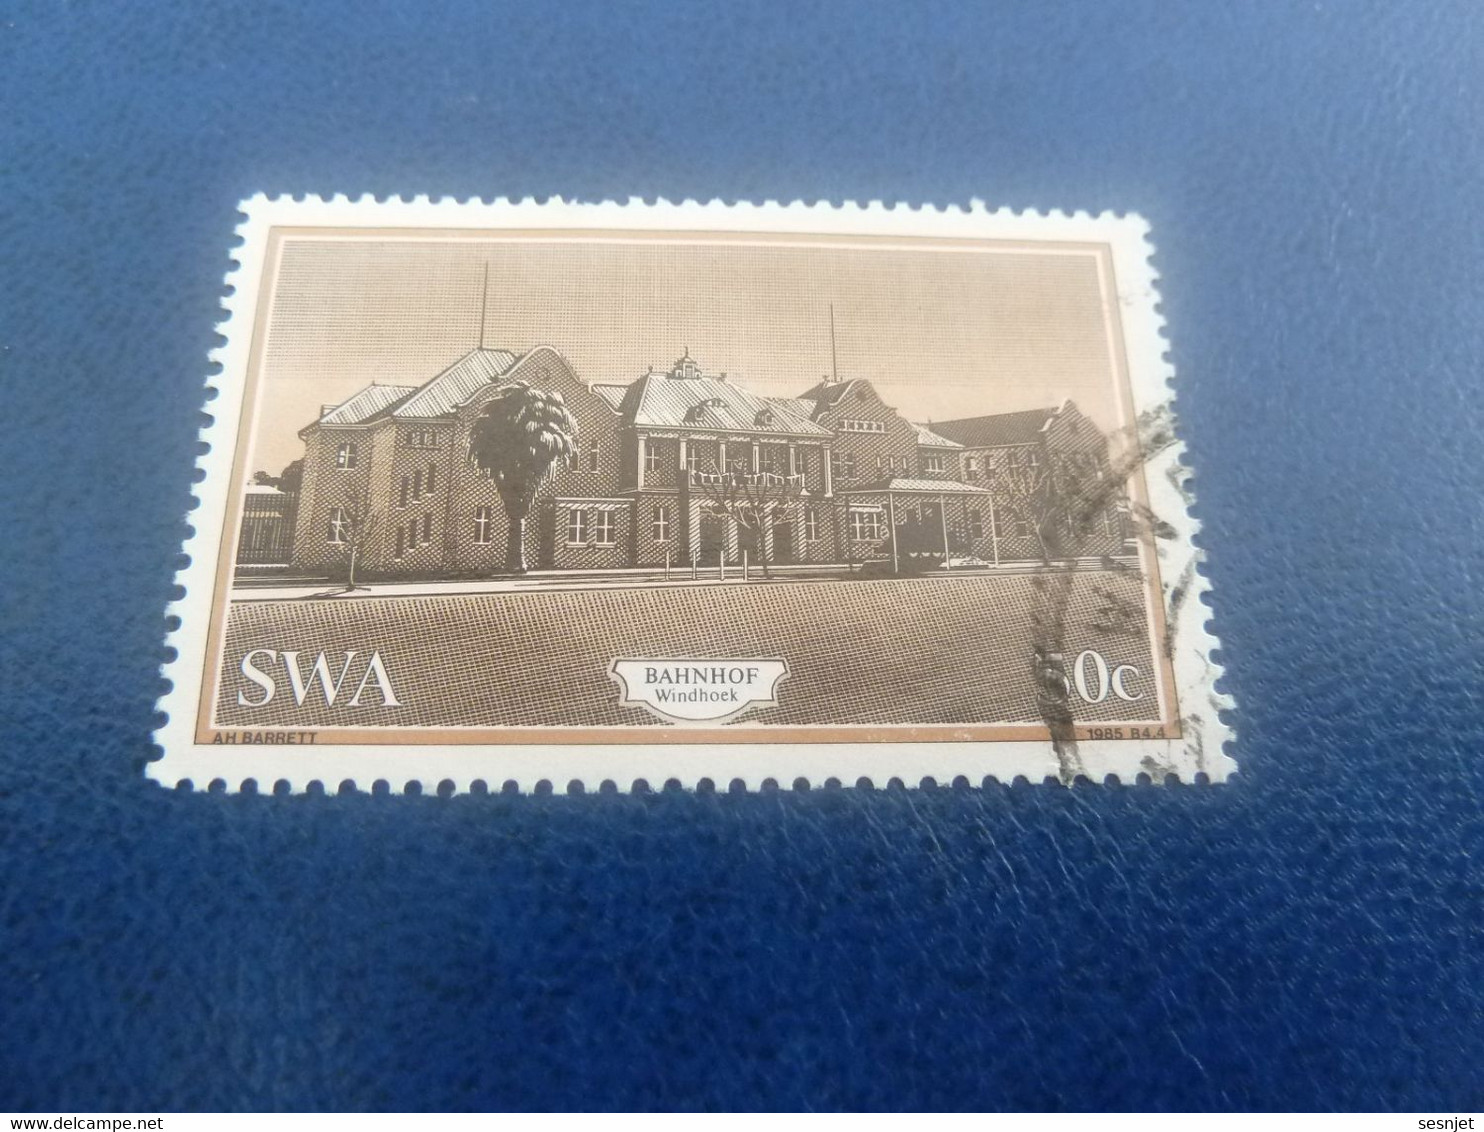 Swa - Bahnhof Windhock - A.H. Barret - 50 C. - Multicolore - Oblitéré - Année 1985 - - Used Stamps